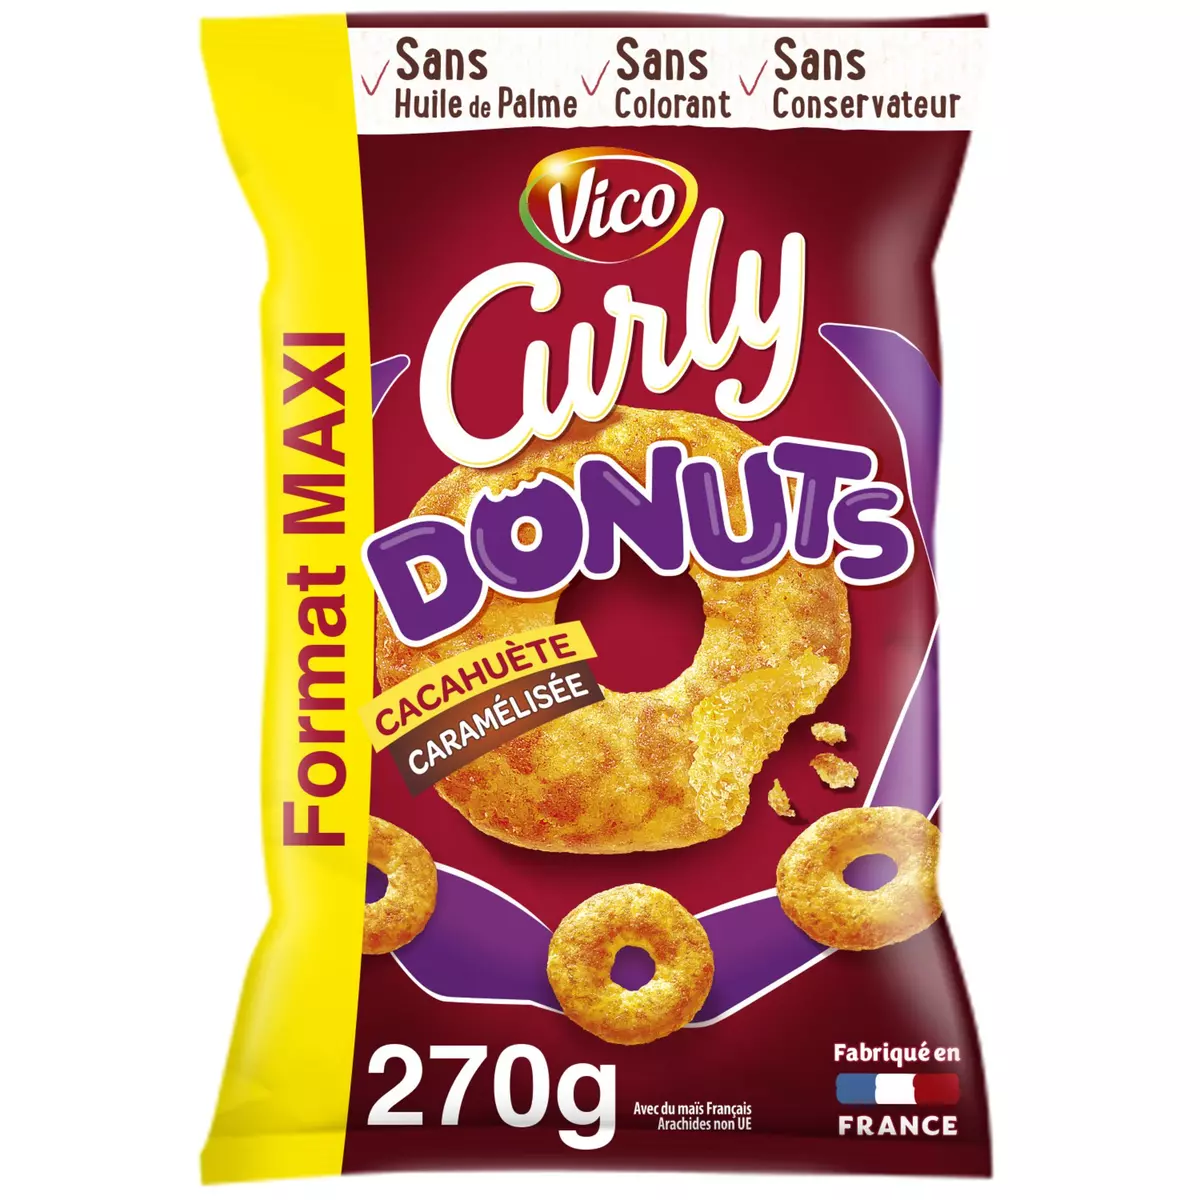 CURLY Biscuits soufflés donuts à la cacahuète caramélisée maxi format 270g